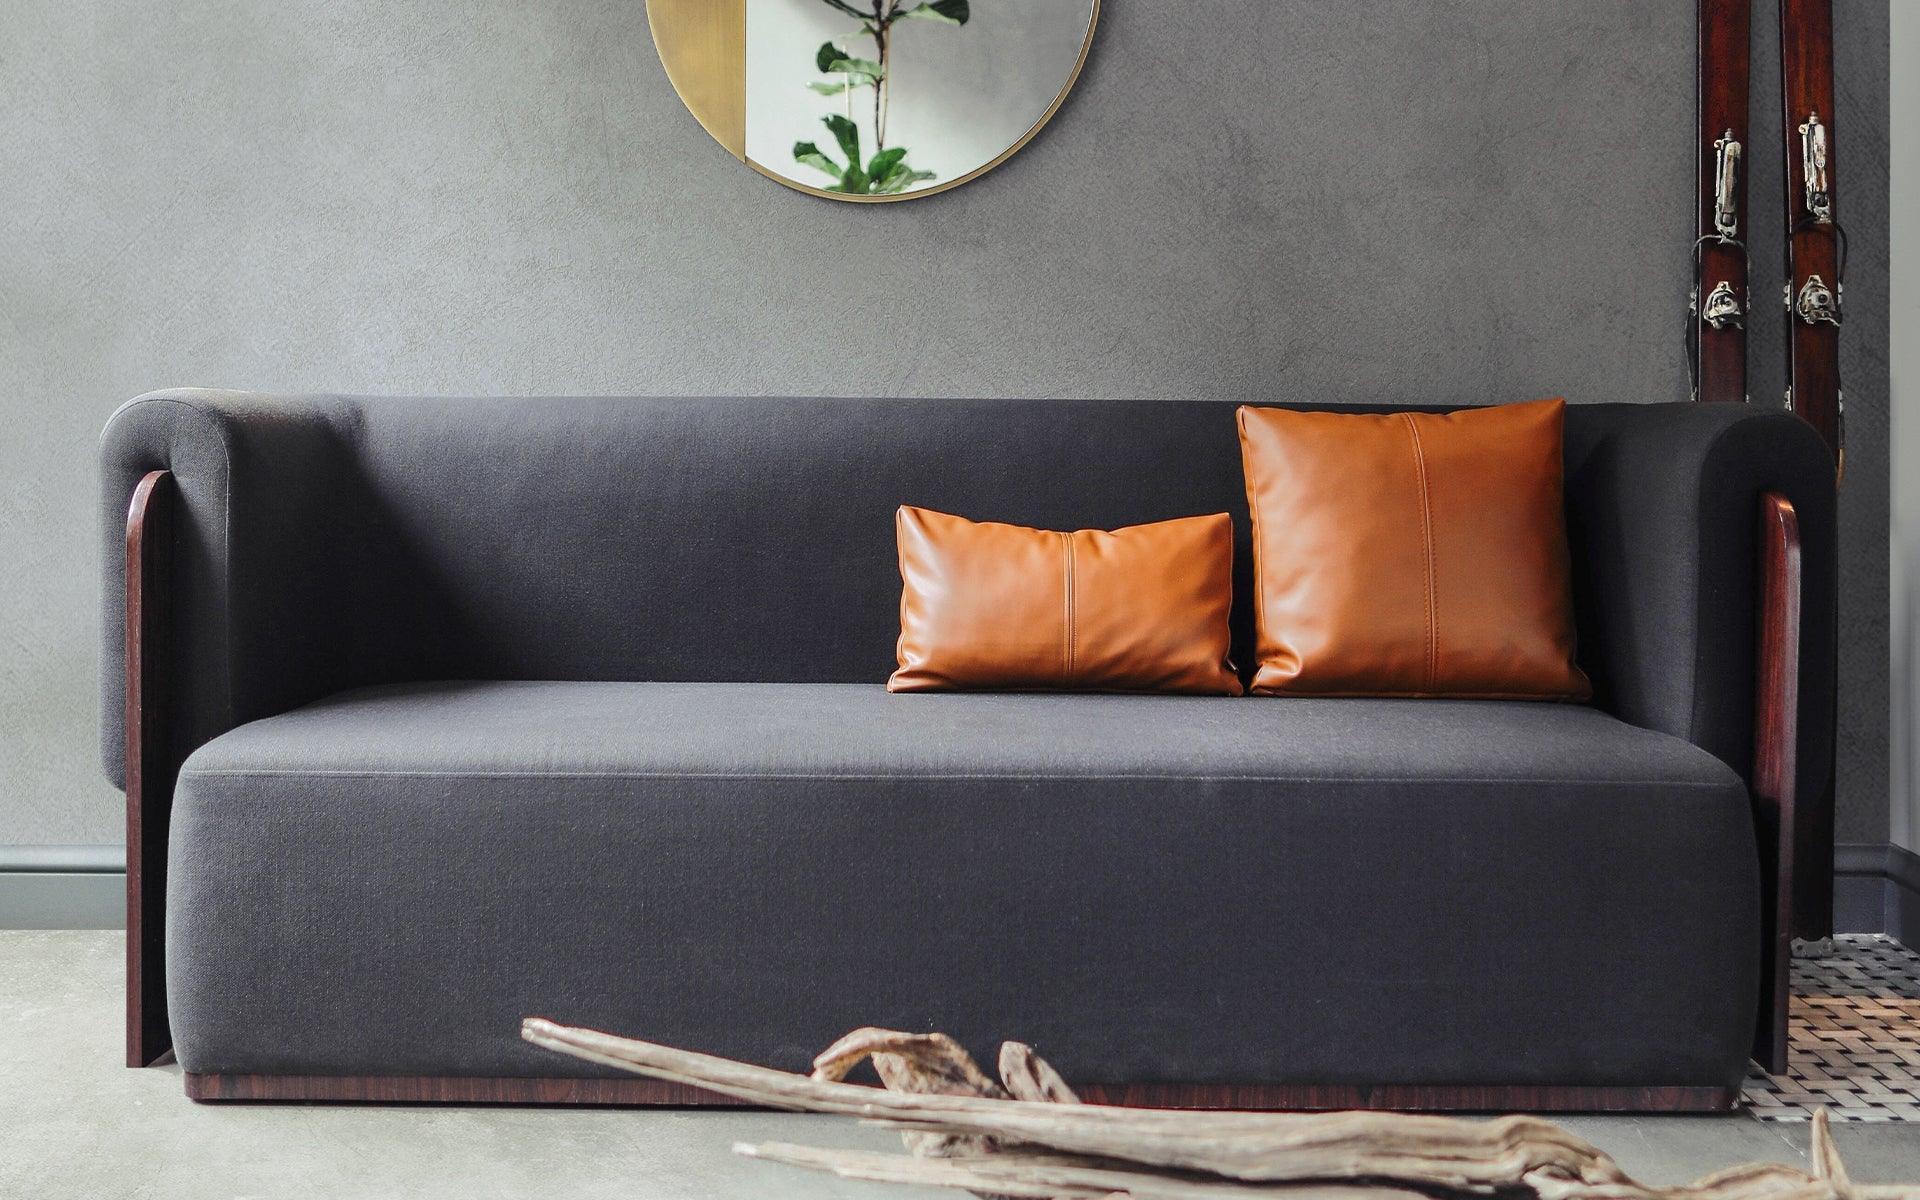 Das 3-Sitzer-Sofa Baika mit seinem eleganten Gehäuse aus dunklem Kastanienholz wird zum unauffälligen und doch auffälligen Möbelstück in Ihrem Zuhause. Dieses einzigartige Sofa besticht durch sein unverwechselbares Design.

Mit seinen weichen